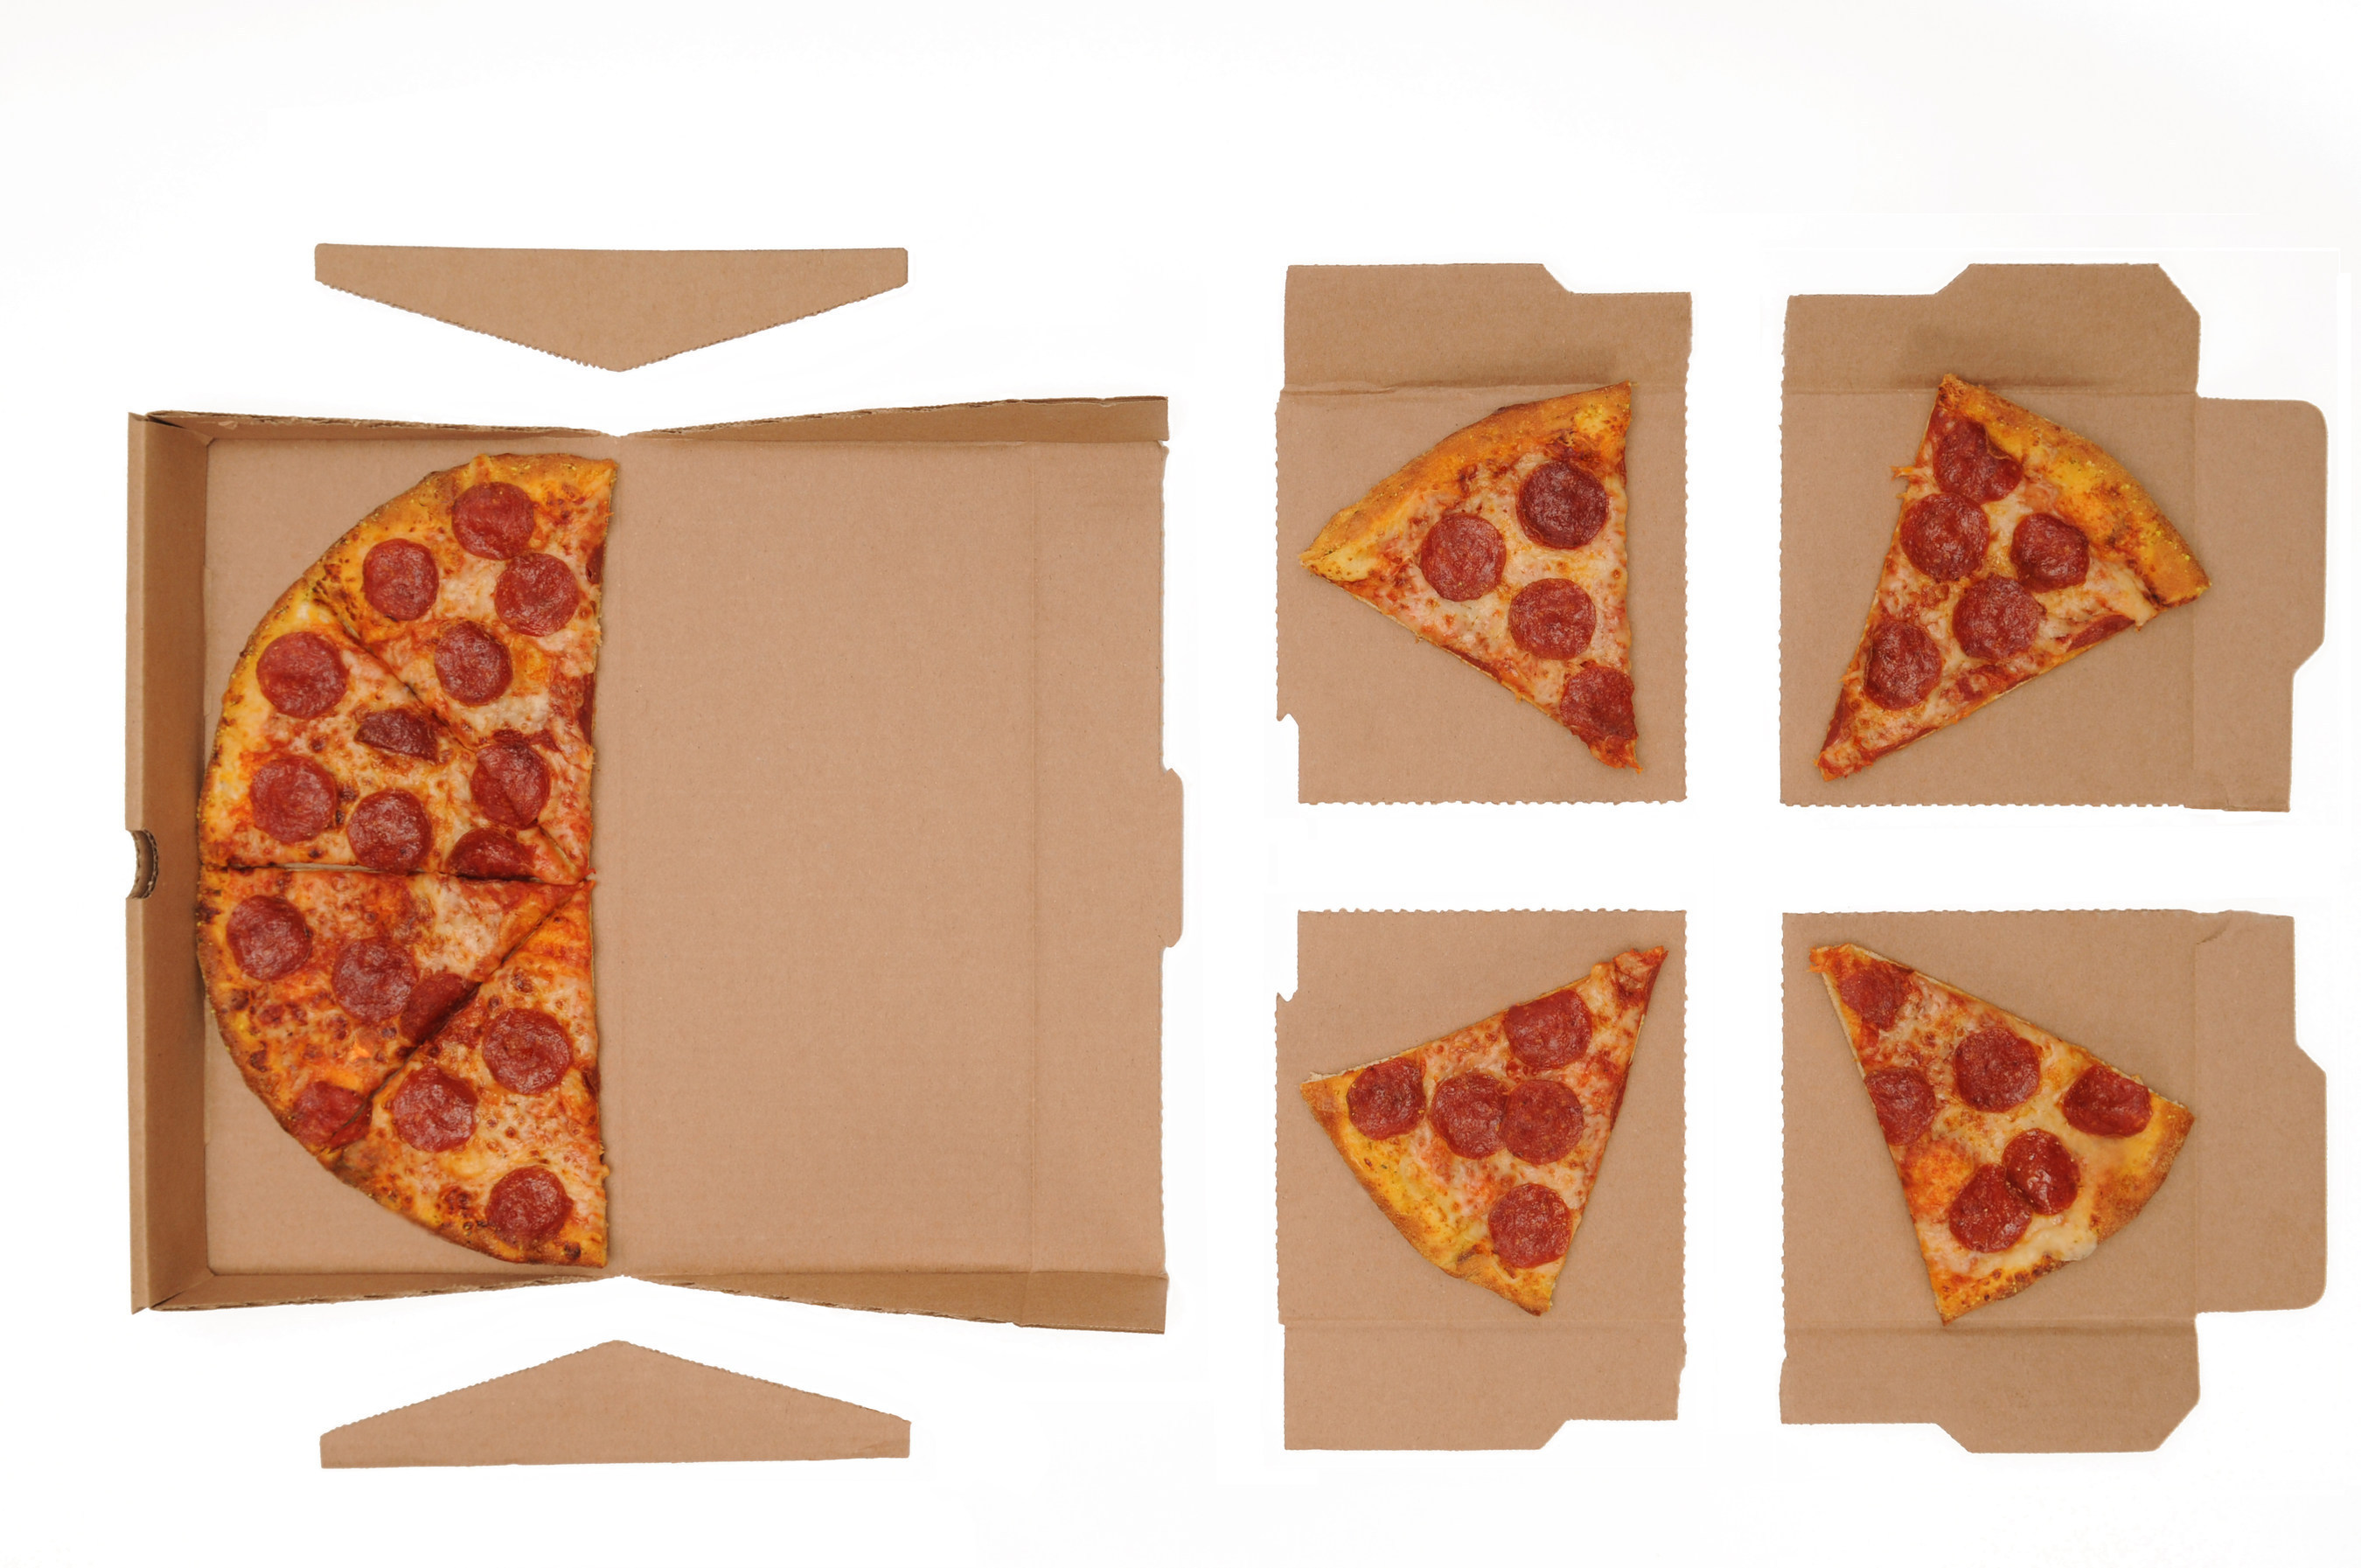 greenbox cajas de pizzas verdes para protejer el medio ambiente layout infographic